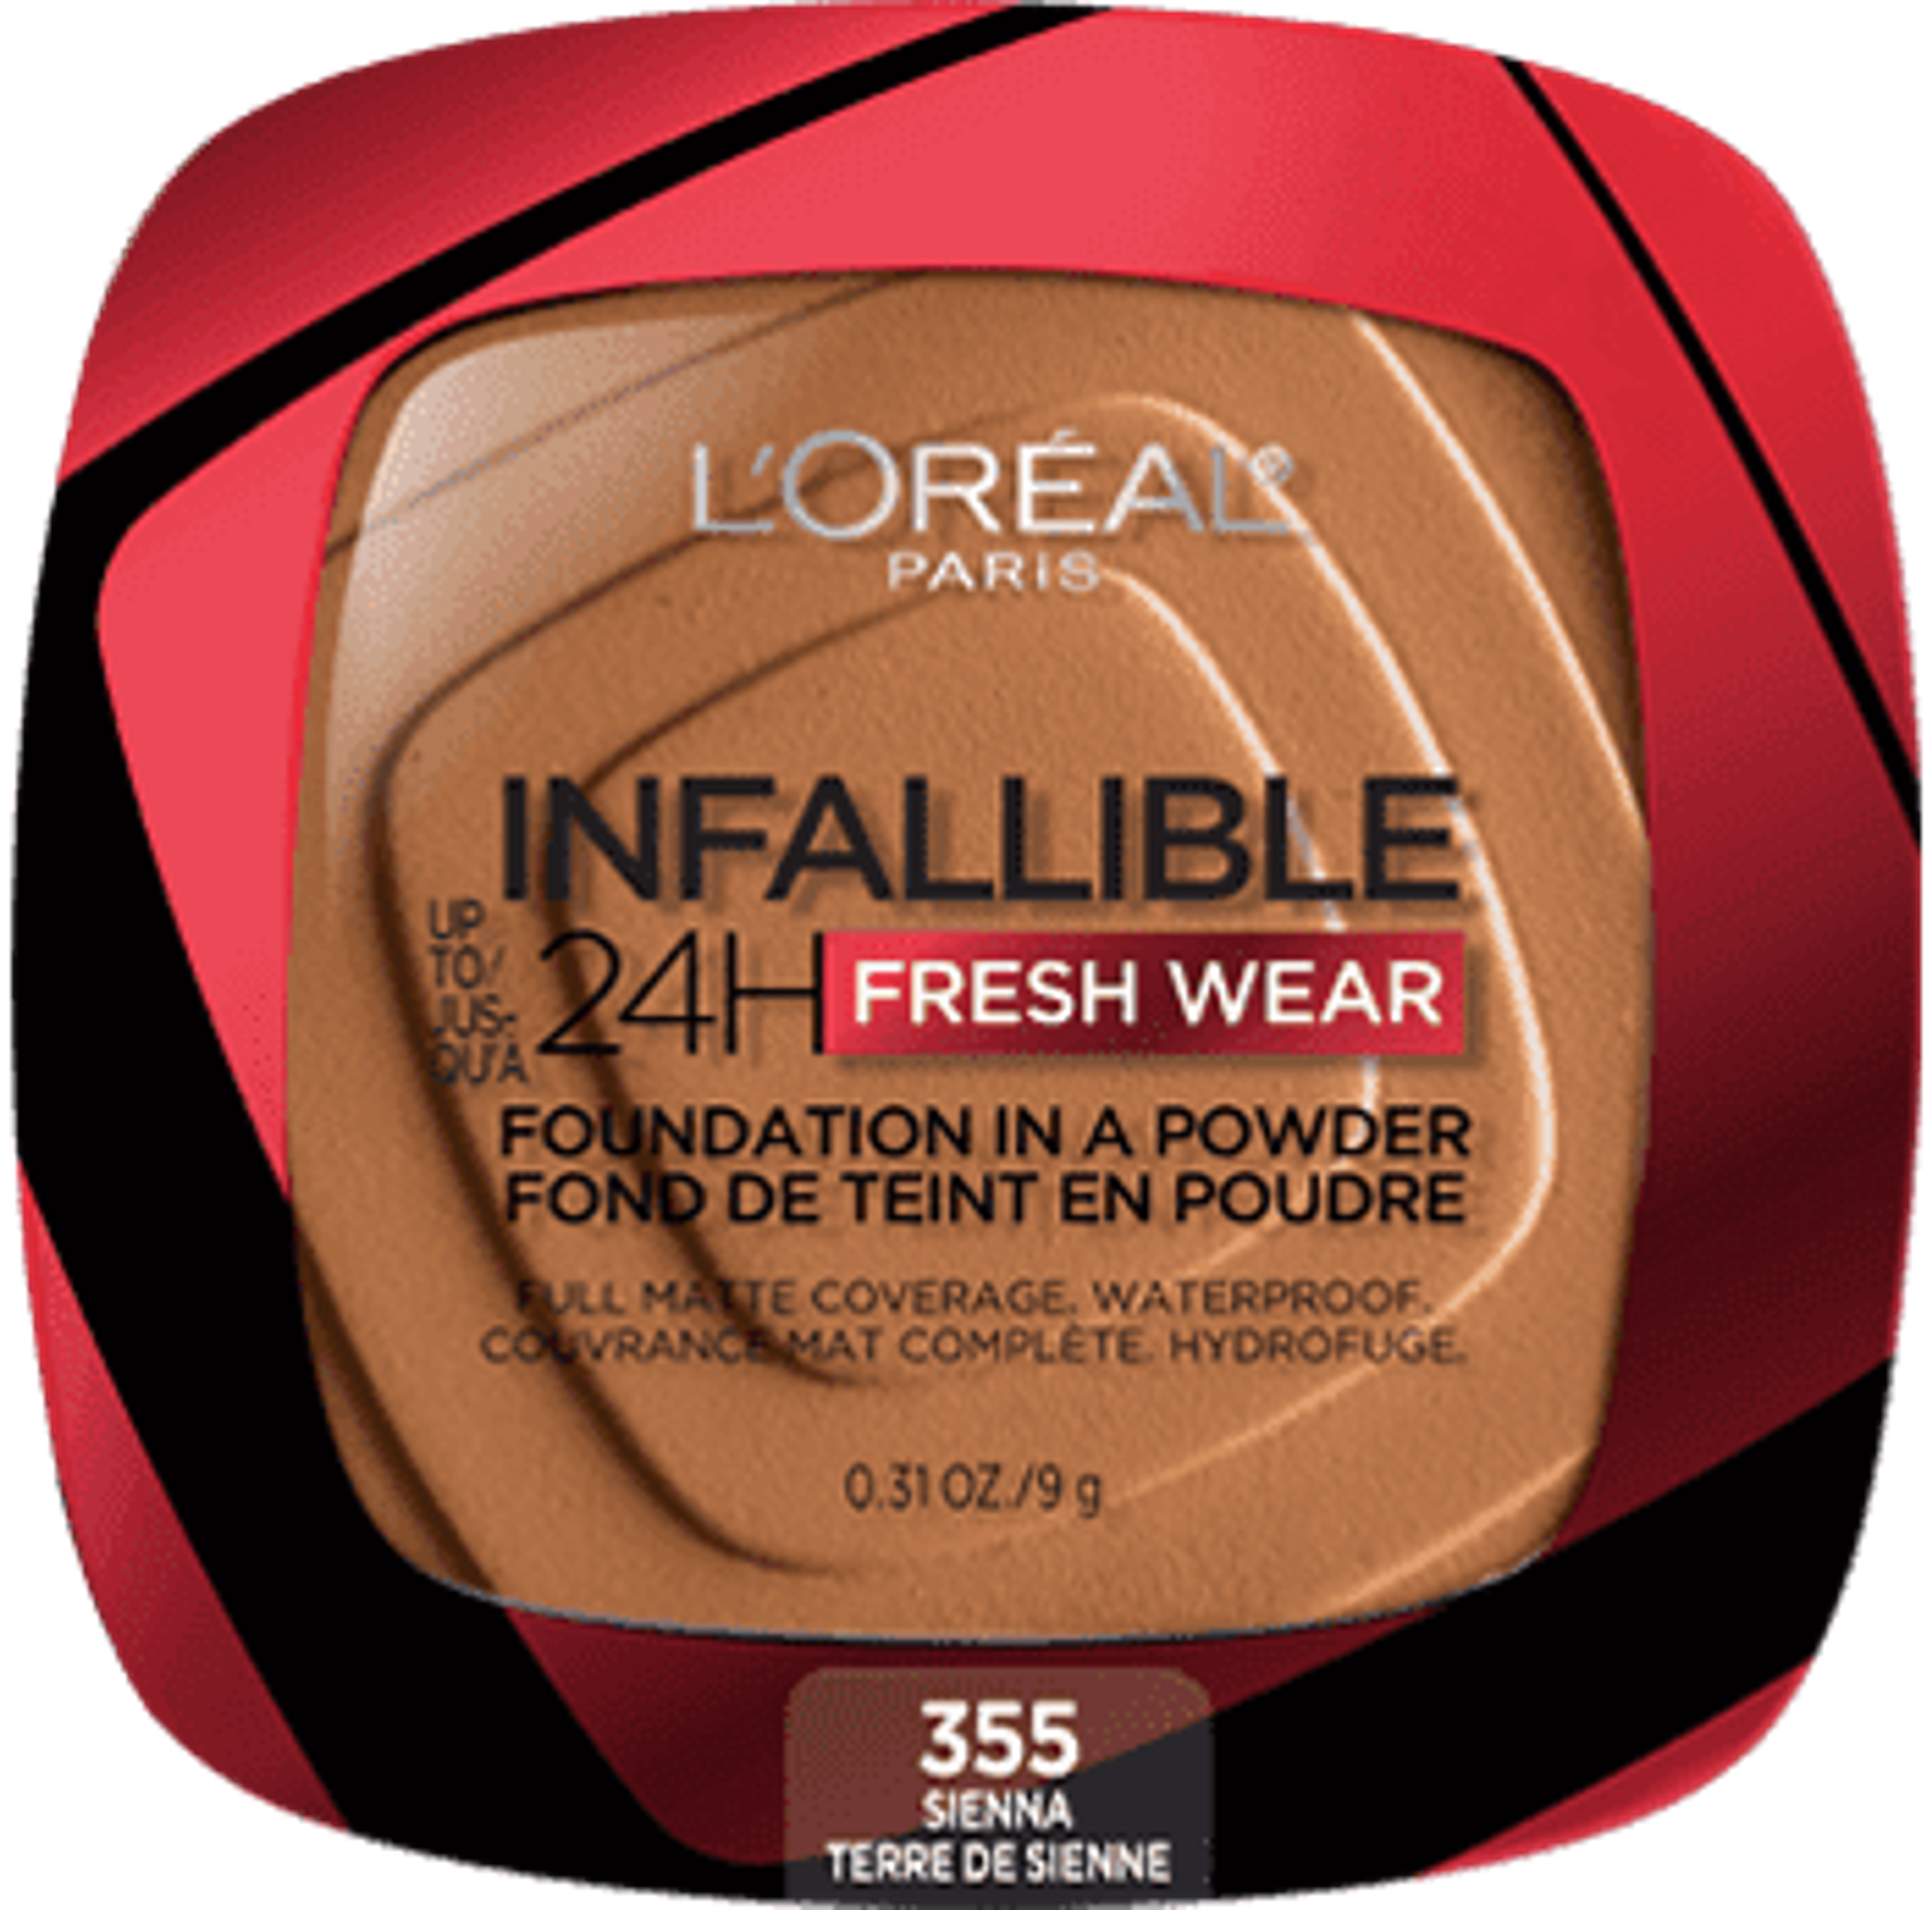 Infallible Up to 24H Fresh Wear Powder Foundation - L'Oréal Paris